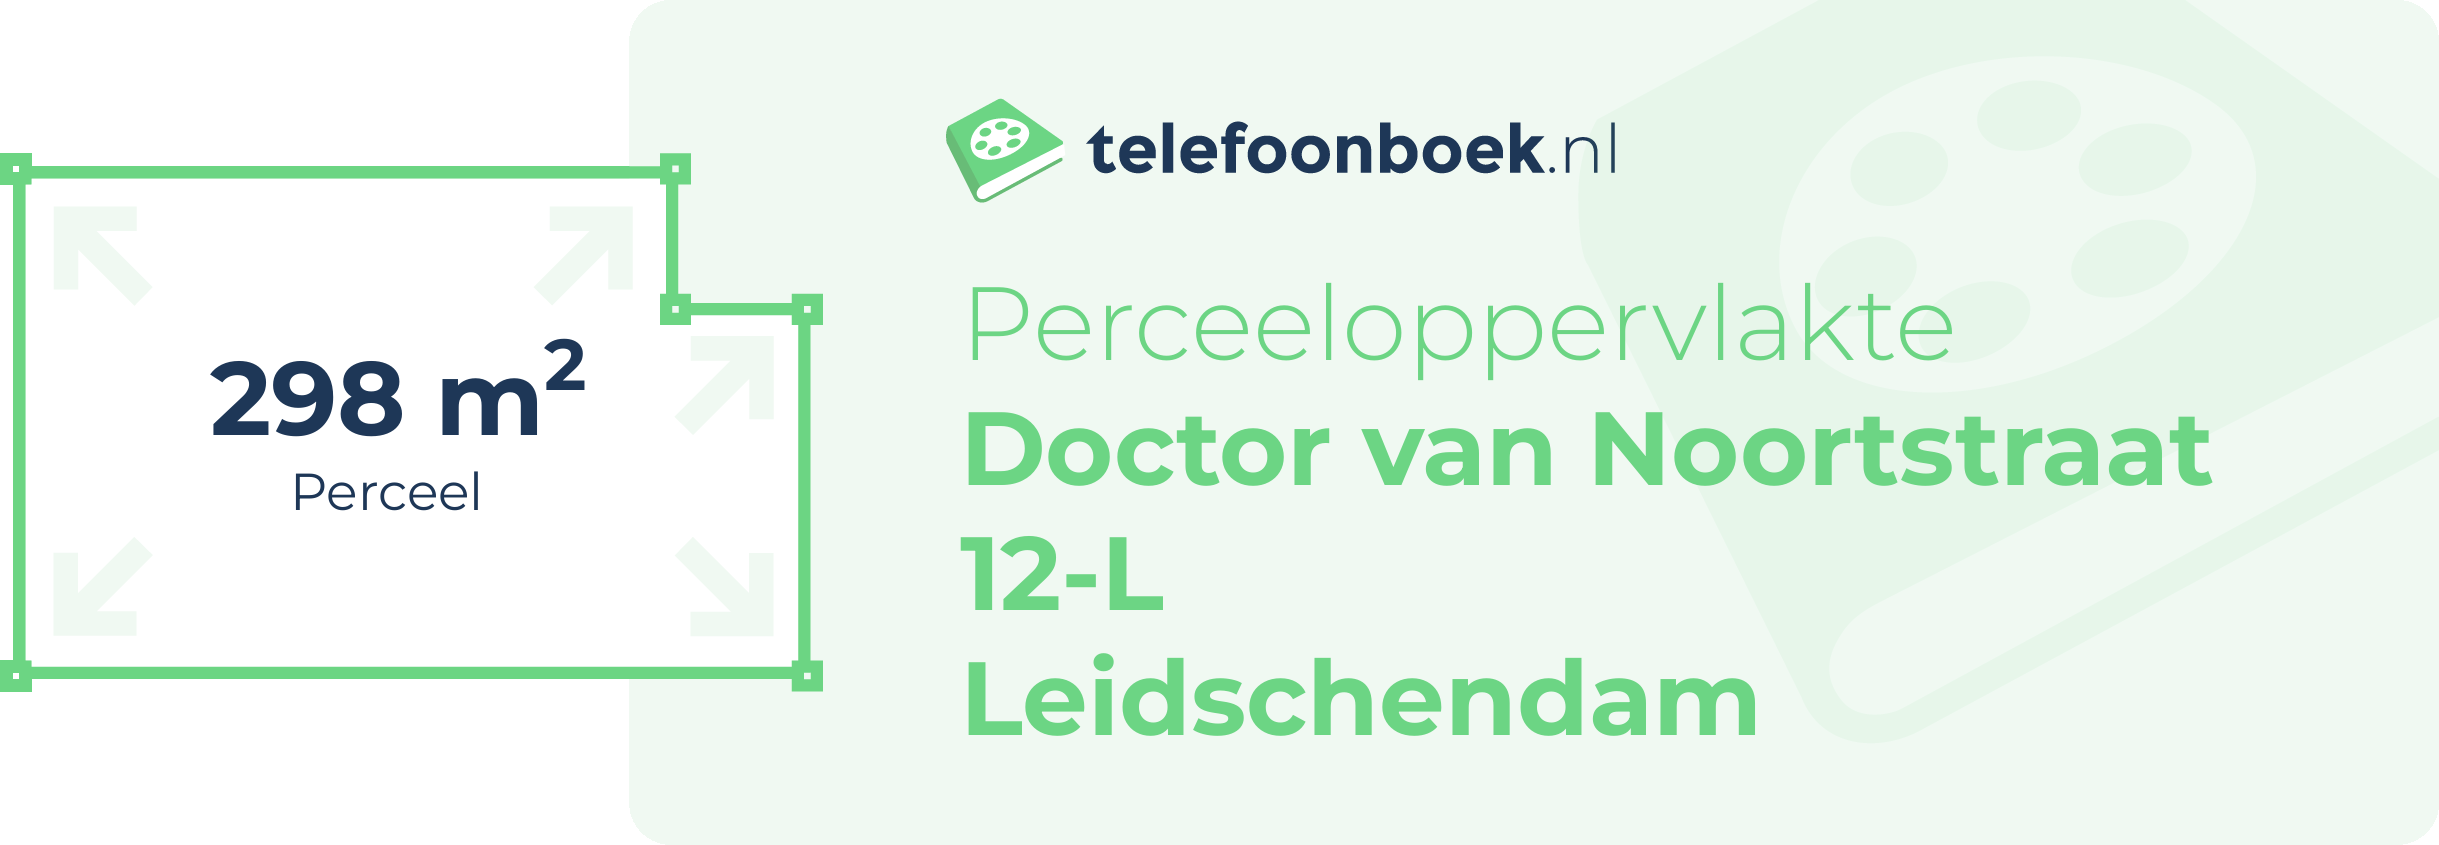 Perceeloppervlakte Doctor Van Noortstraat 12-L Leidschendam